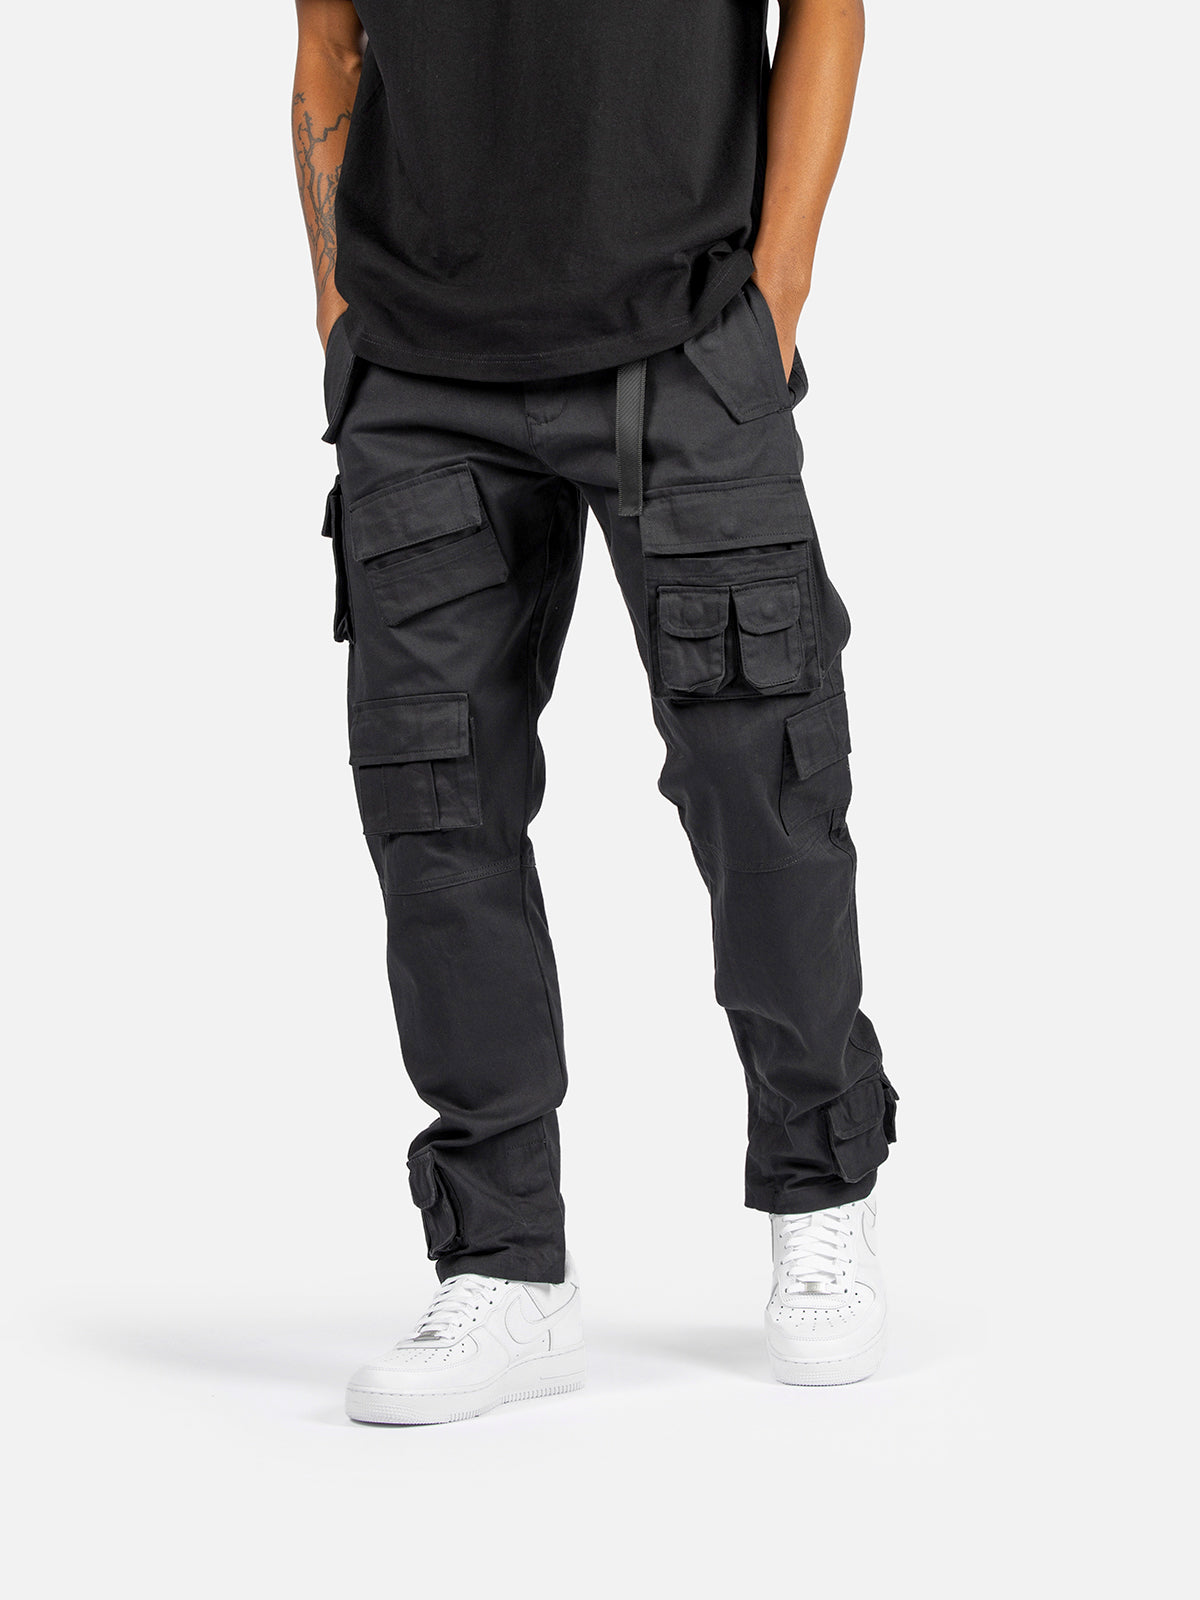 N1 Cargo Pants - Black  Blacktailor – BLACKTAILOR